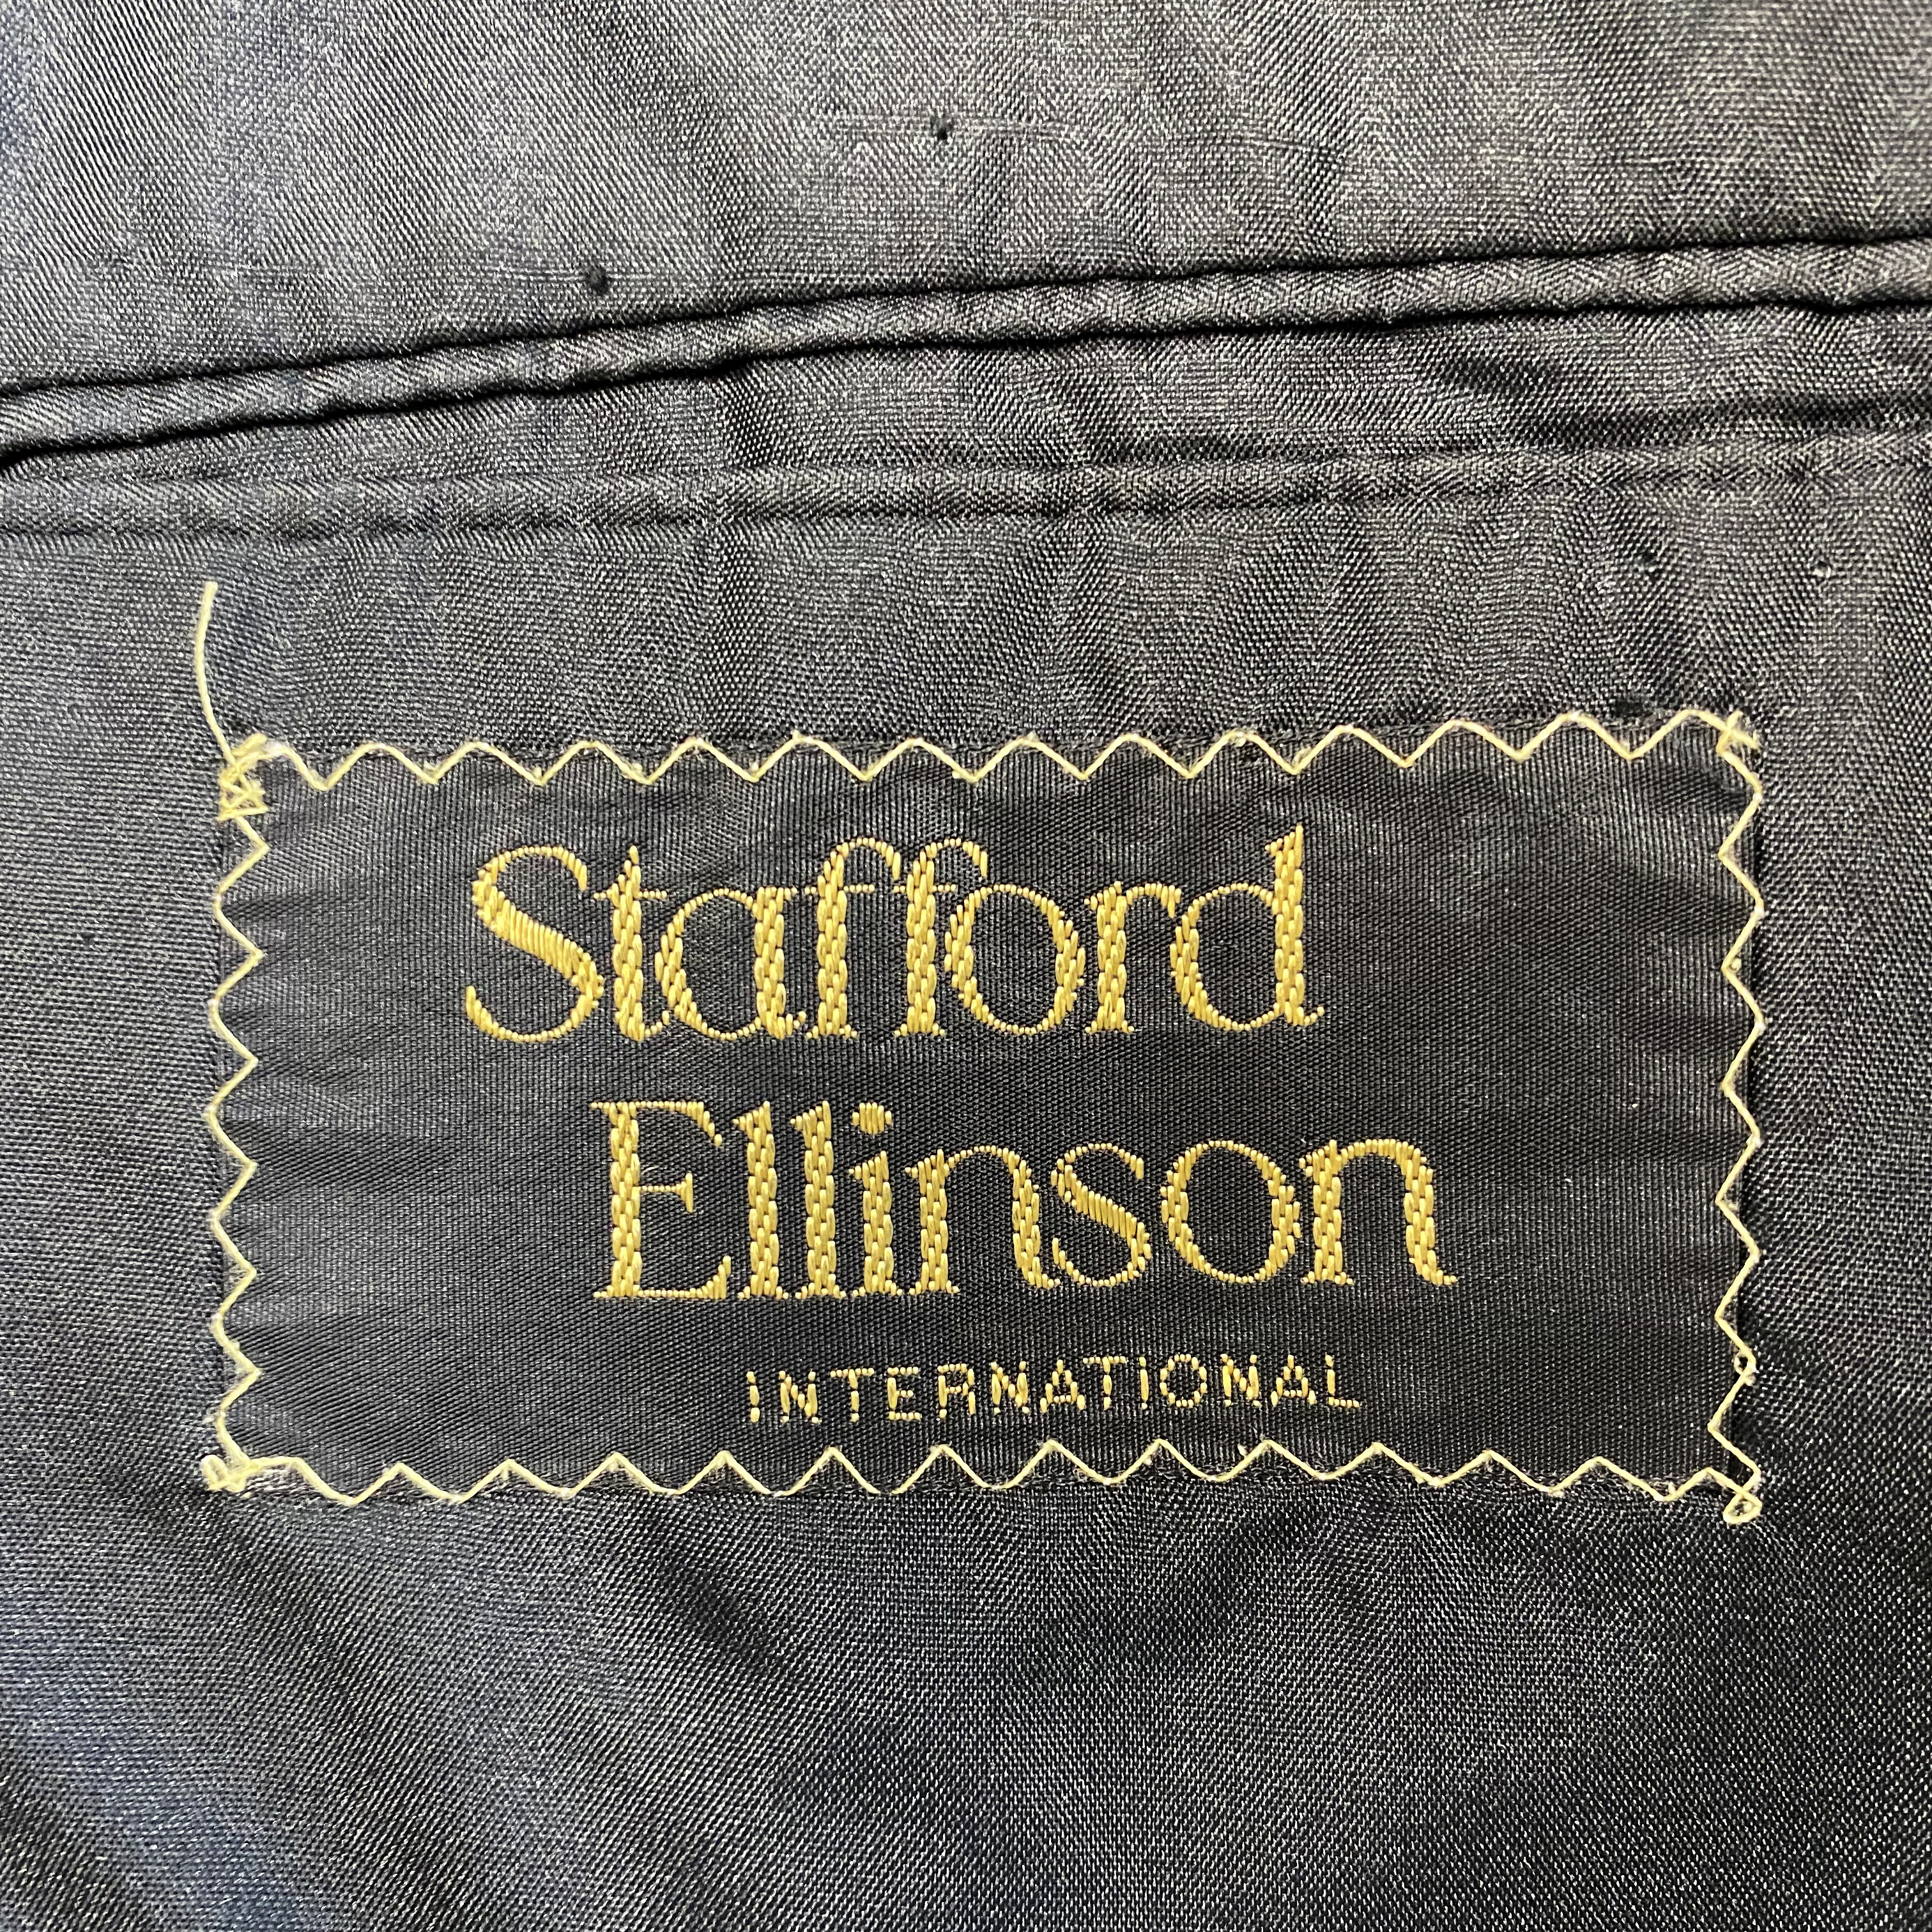 Stafford Ellinson Tuxedo